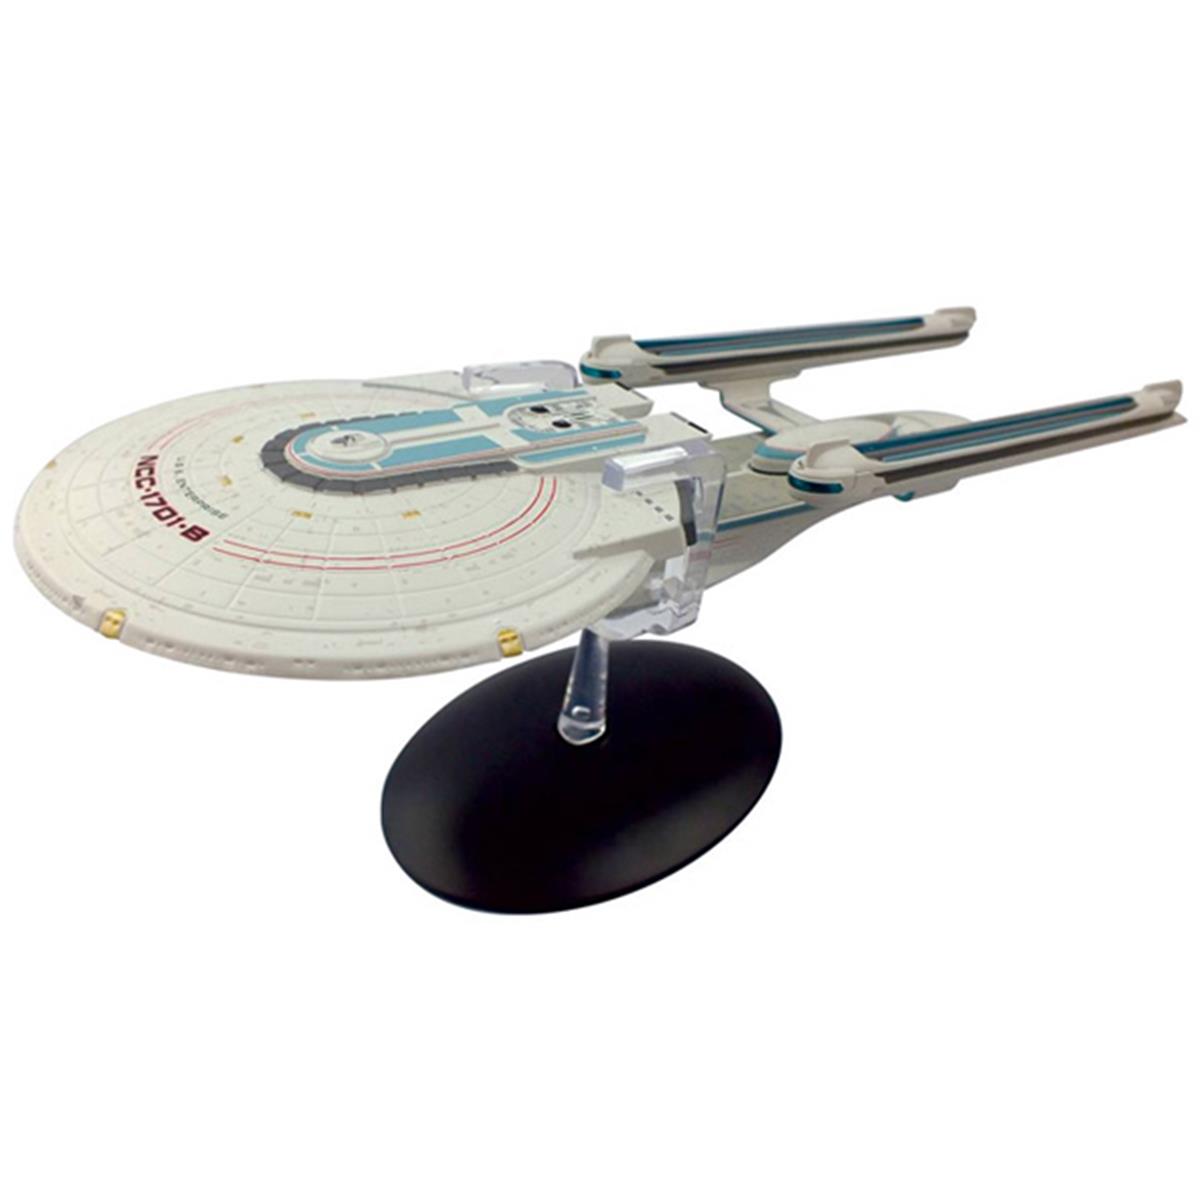 Eagsssuk608 Stbig08 Star Trek Uss Enterprise Ncc-1701-b - Excelsior-class Starship